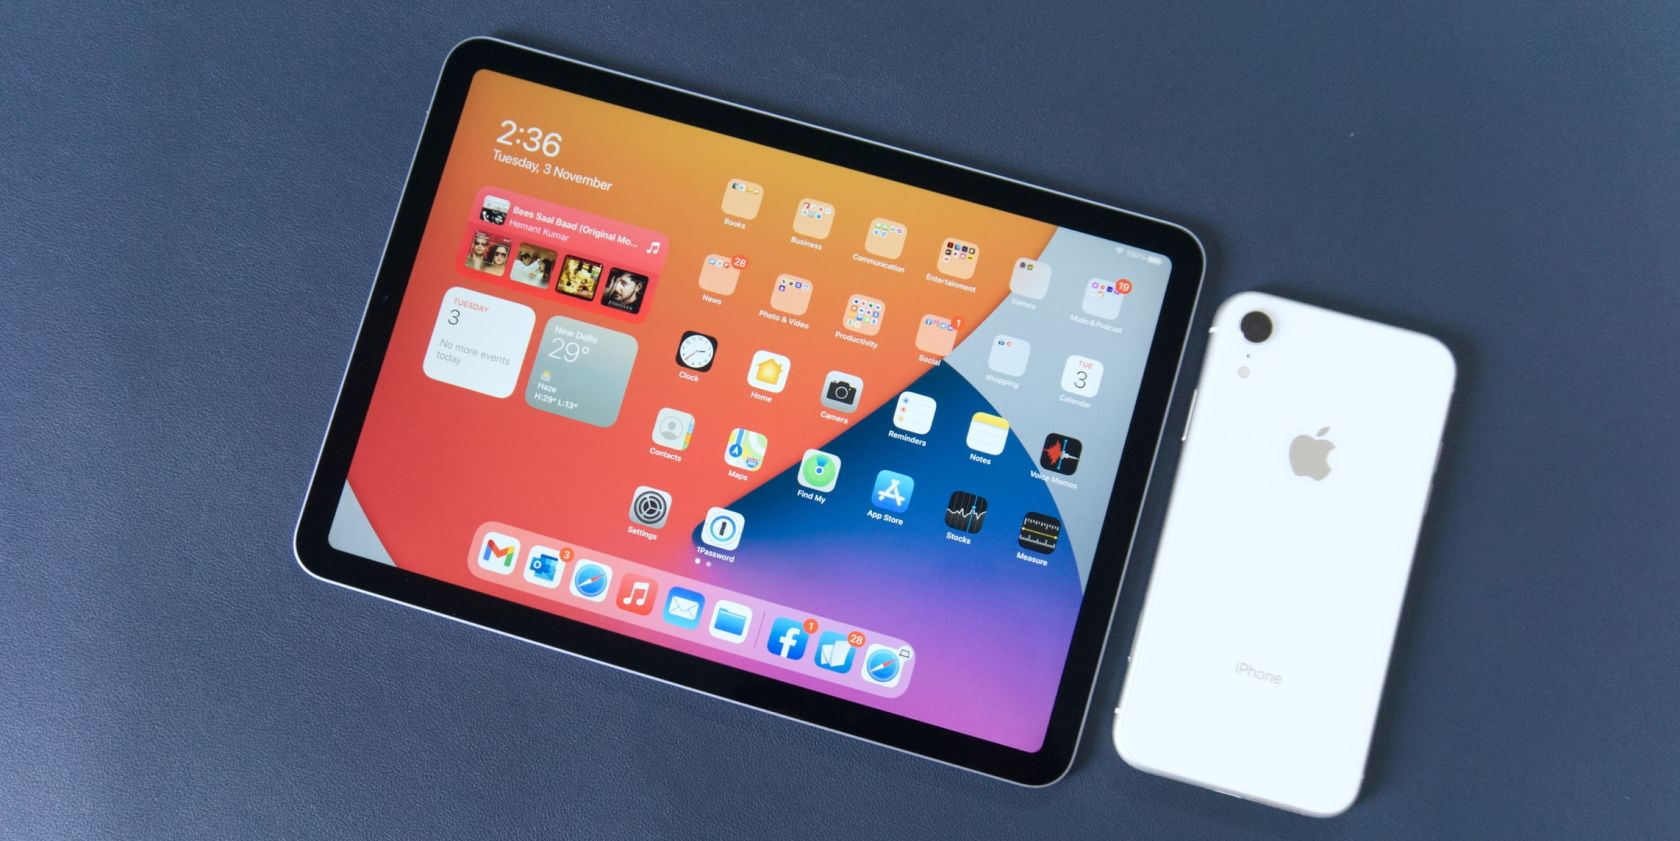 iPad Air 2020 next to iPhone